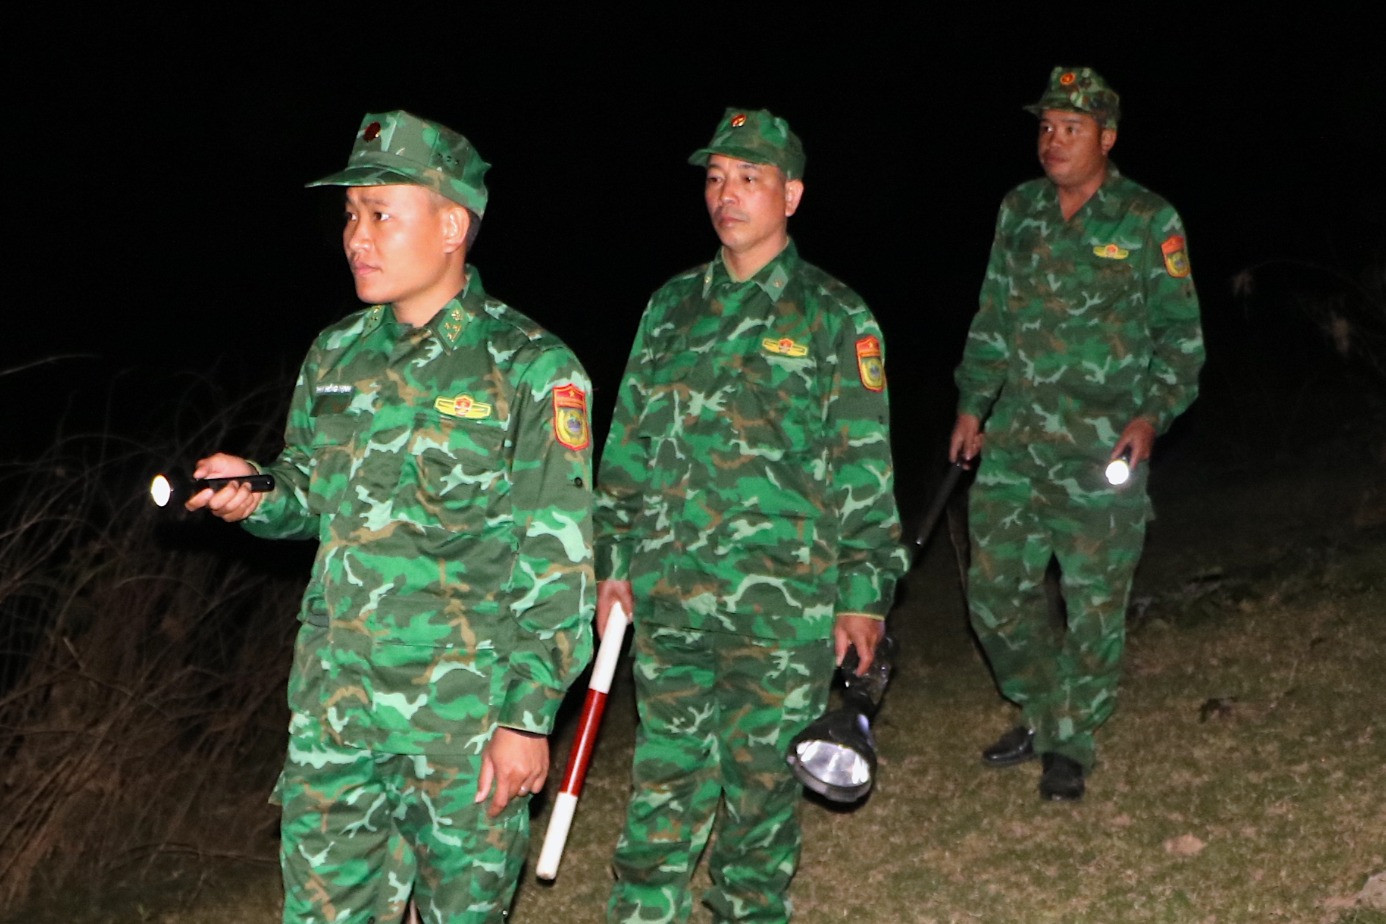 Đêm giao thừa với các chiến sĩ ở biên giới Việt - Lào